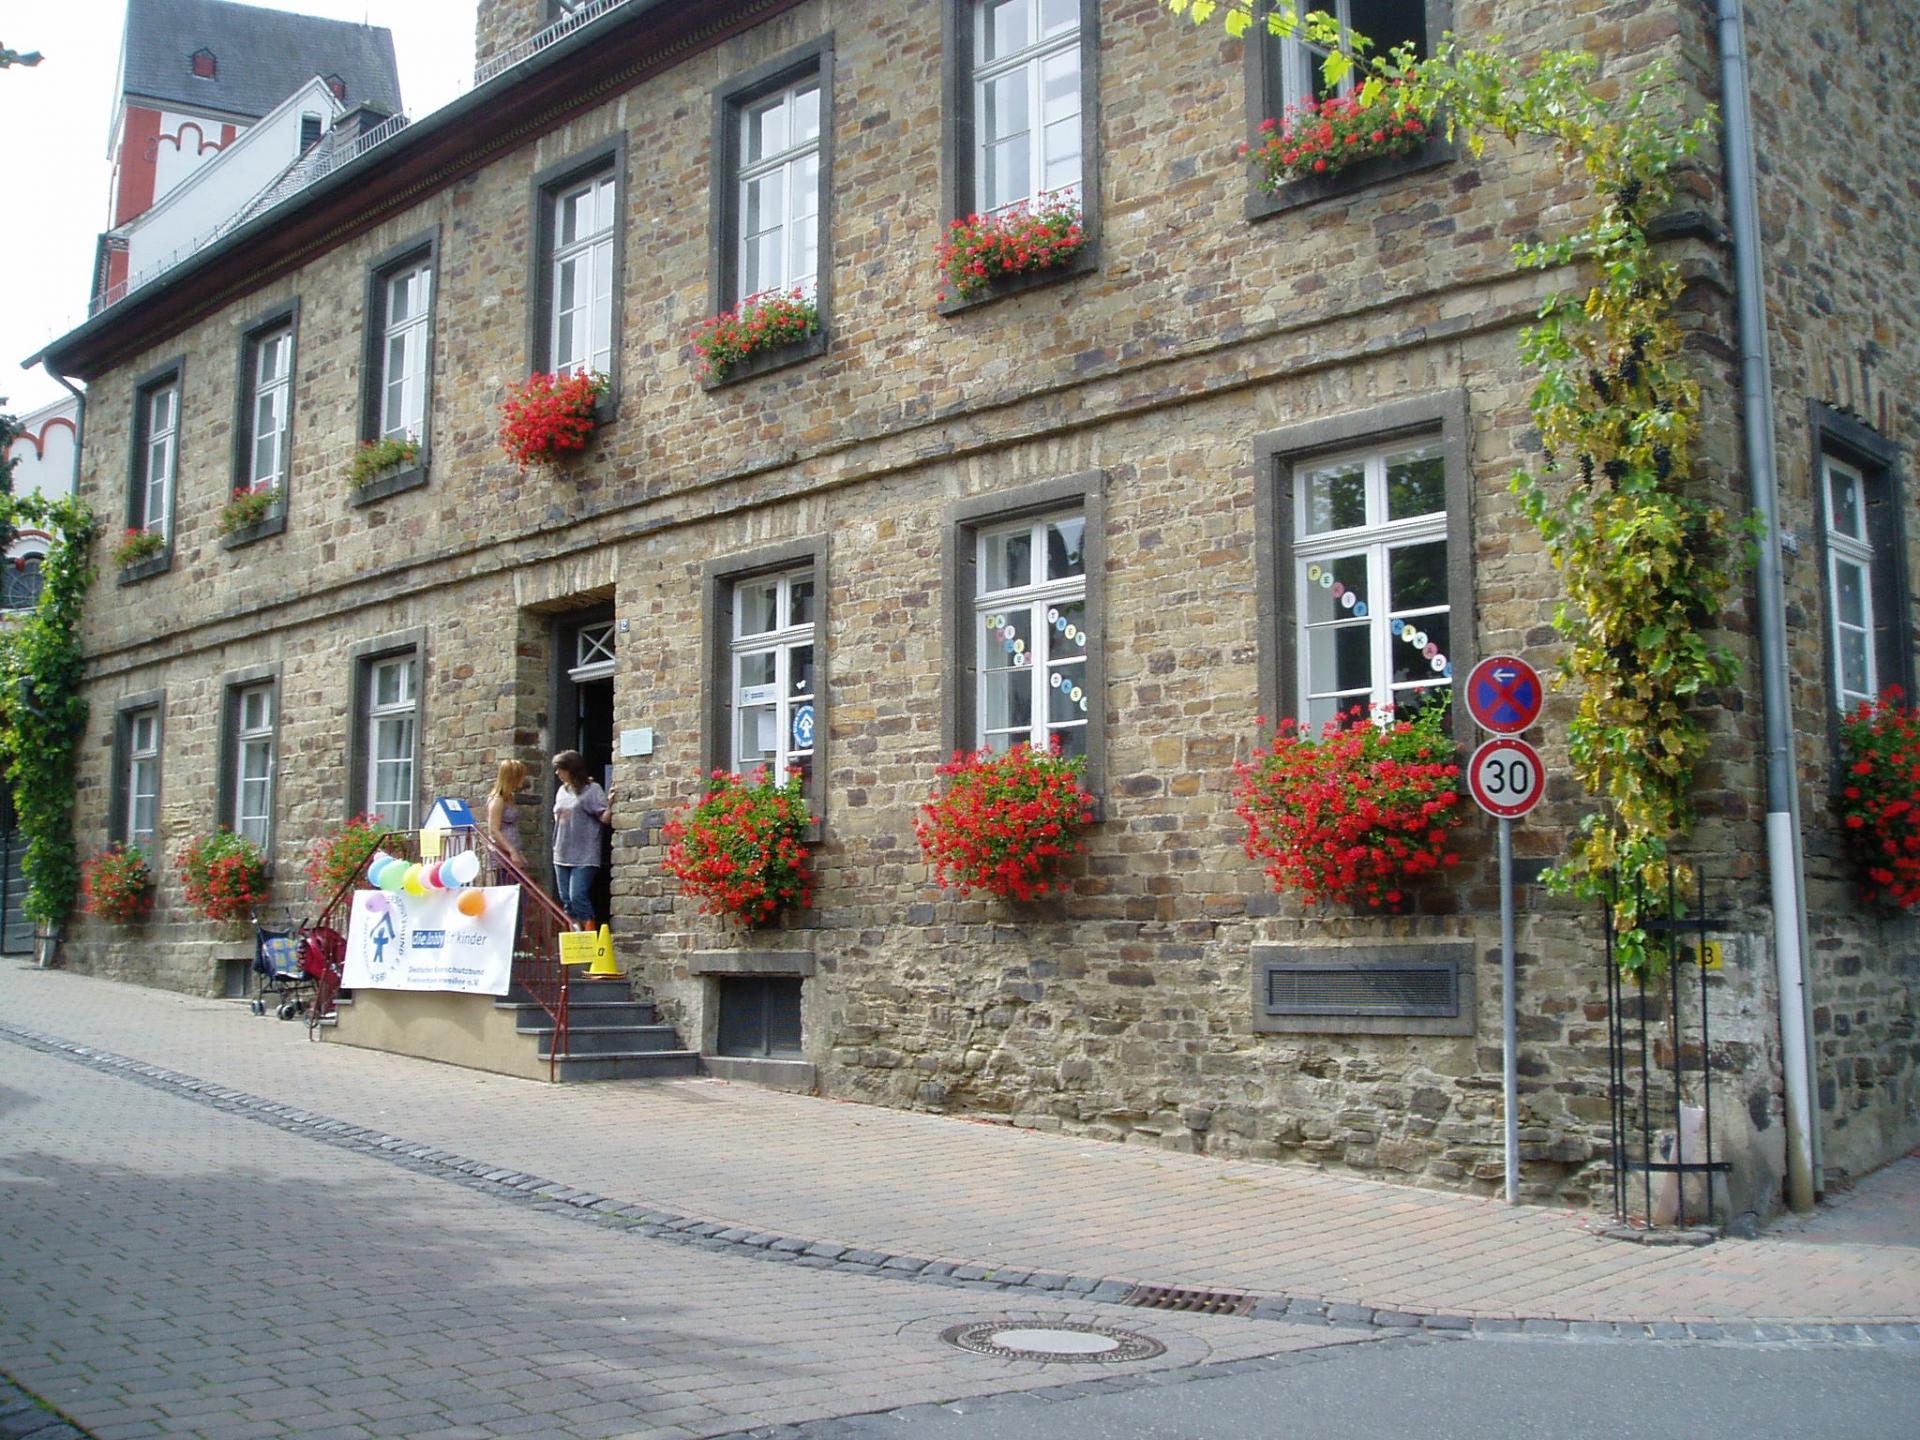 Bild: Die Alte Schule in Oberbreisig - Heimat unseres FamilienTreffs